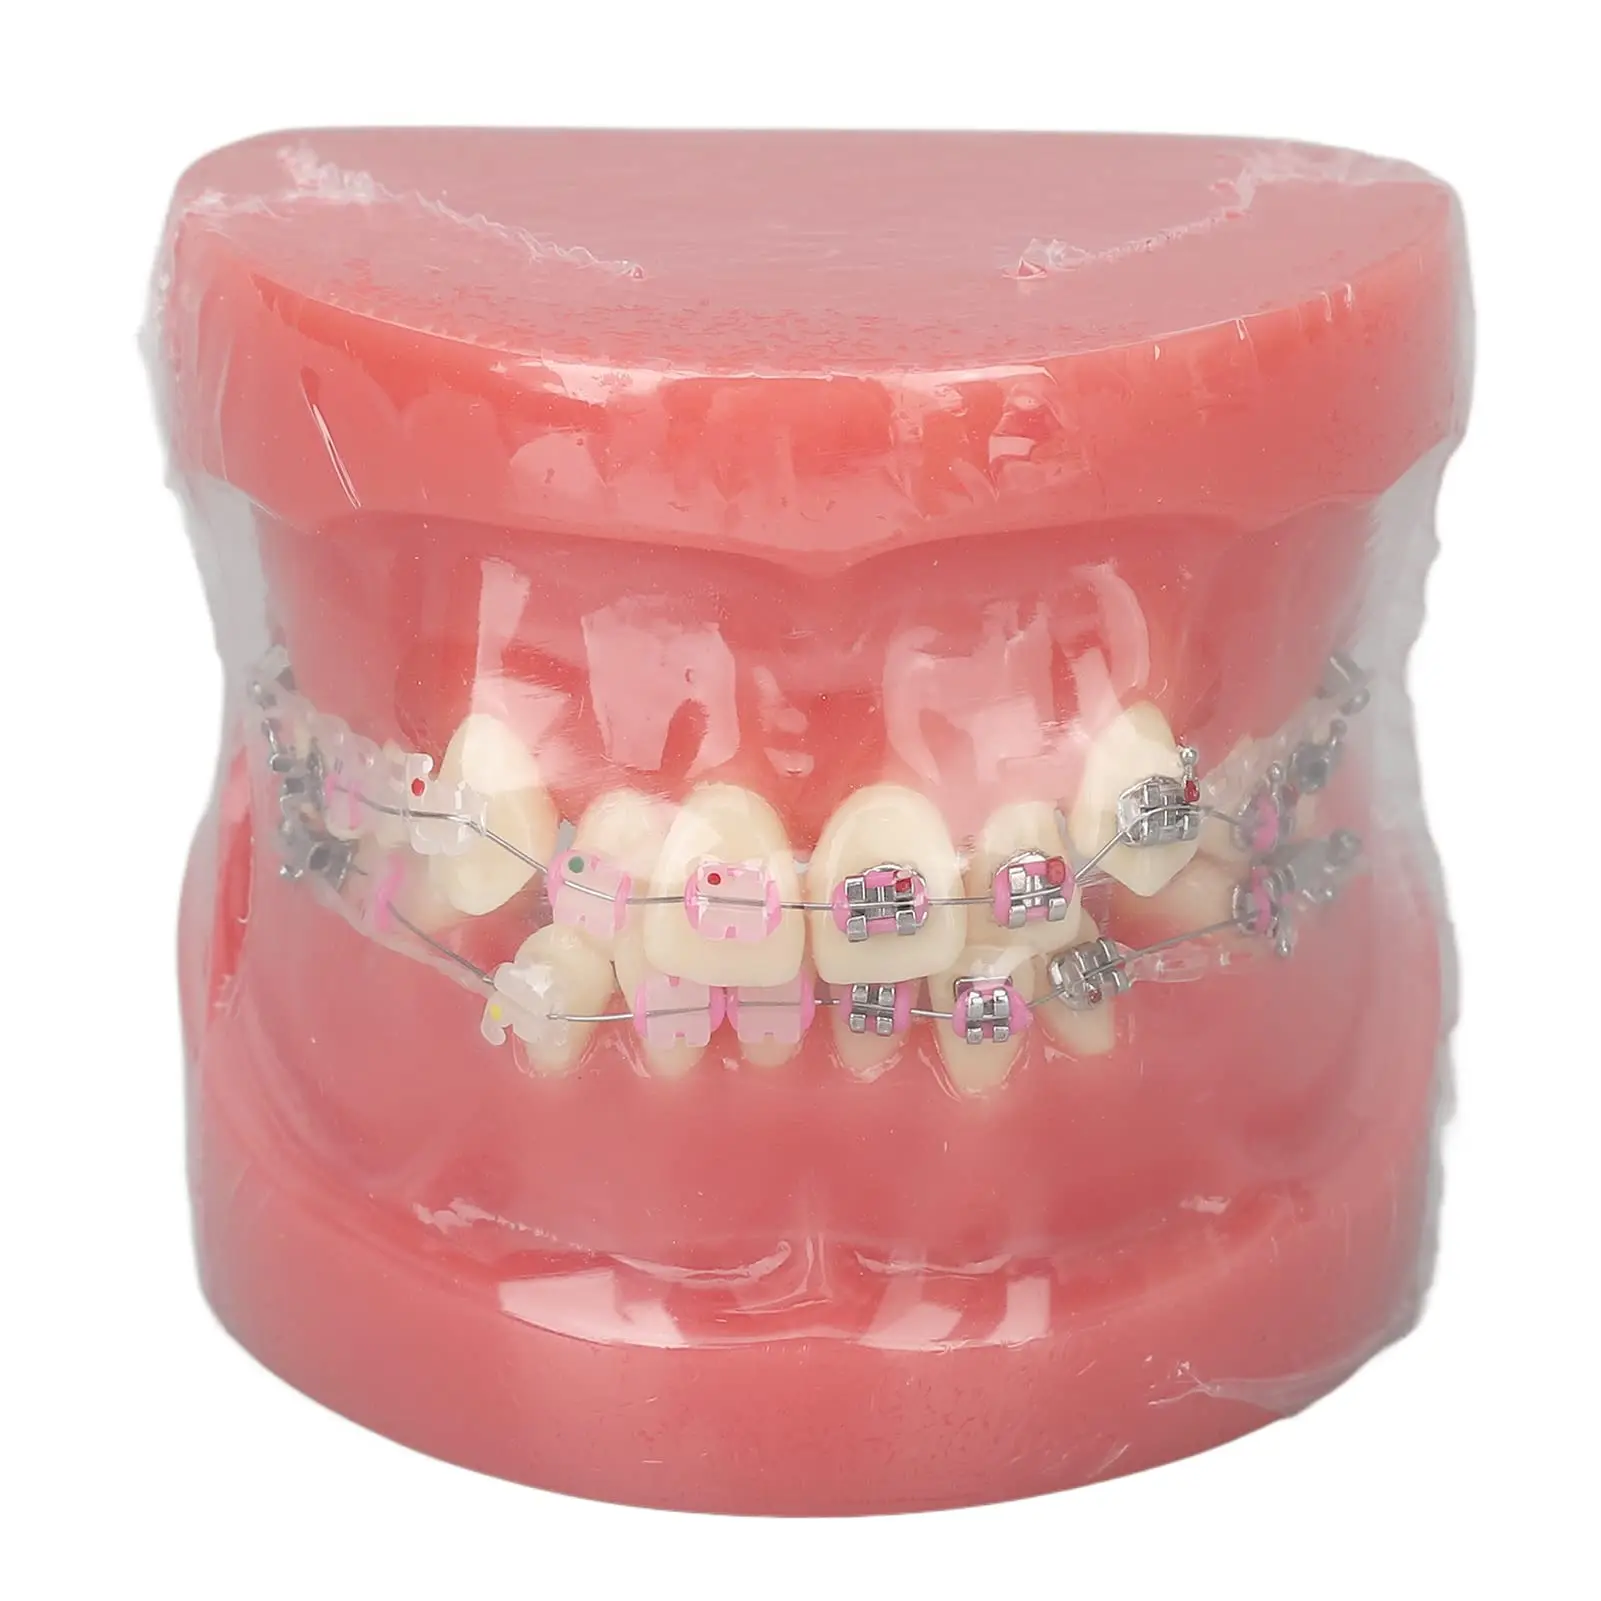 dientes postizos para niños - Qué es una prótesis dental para niños